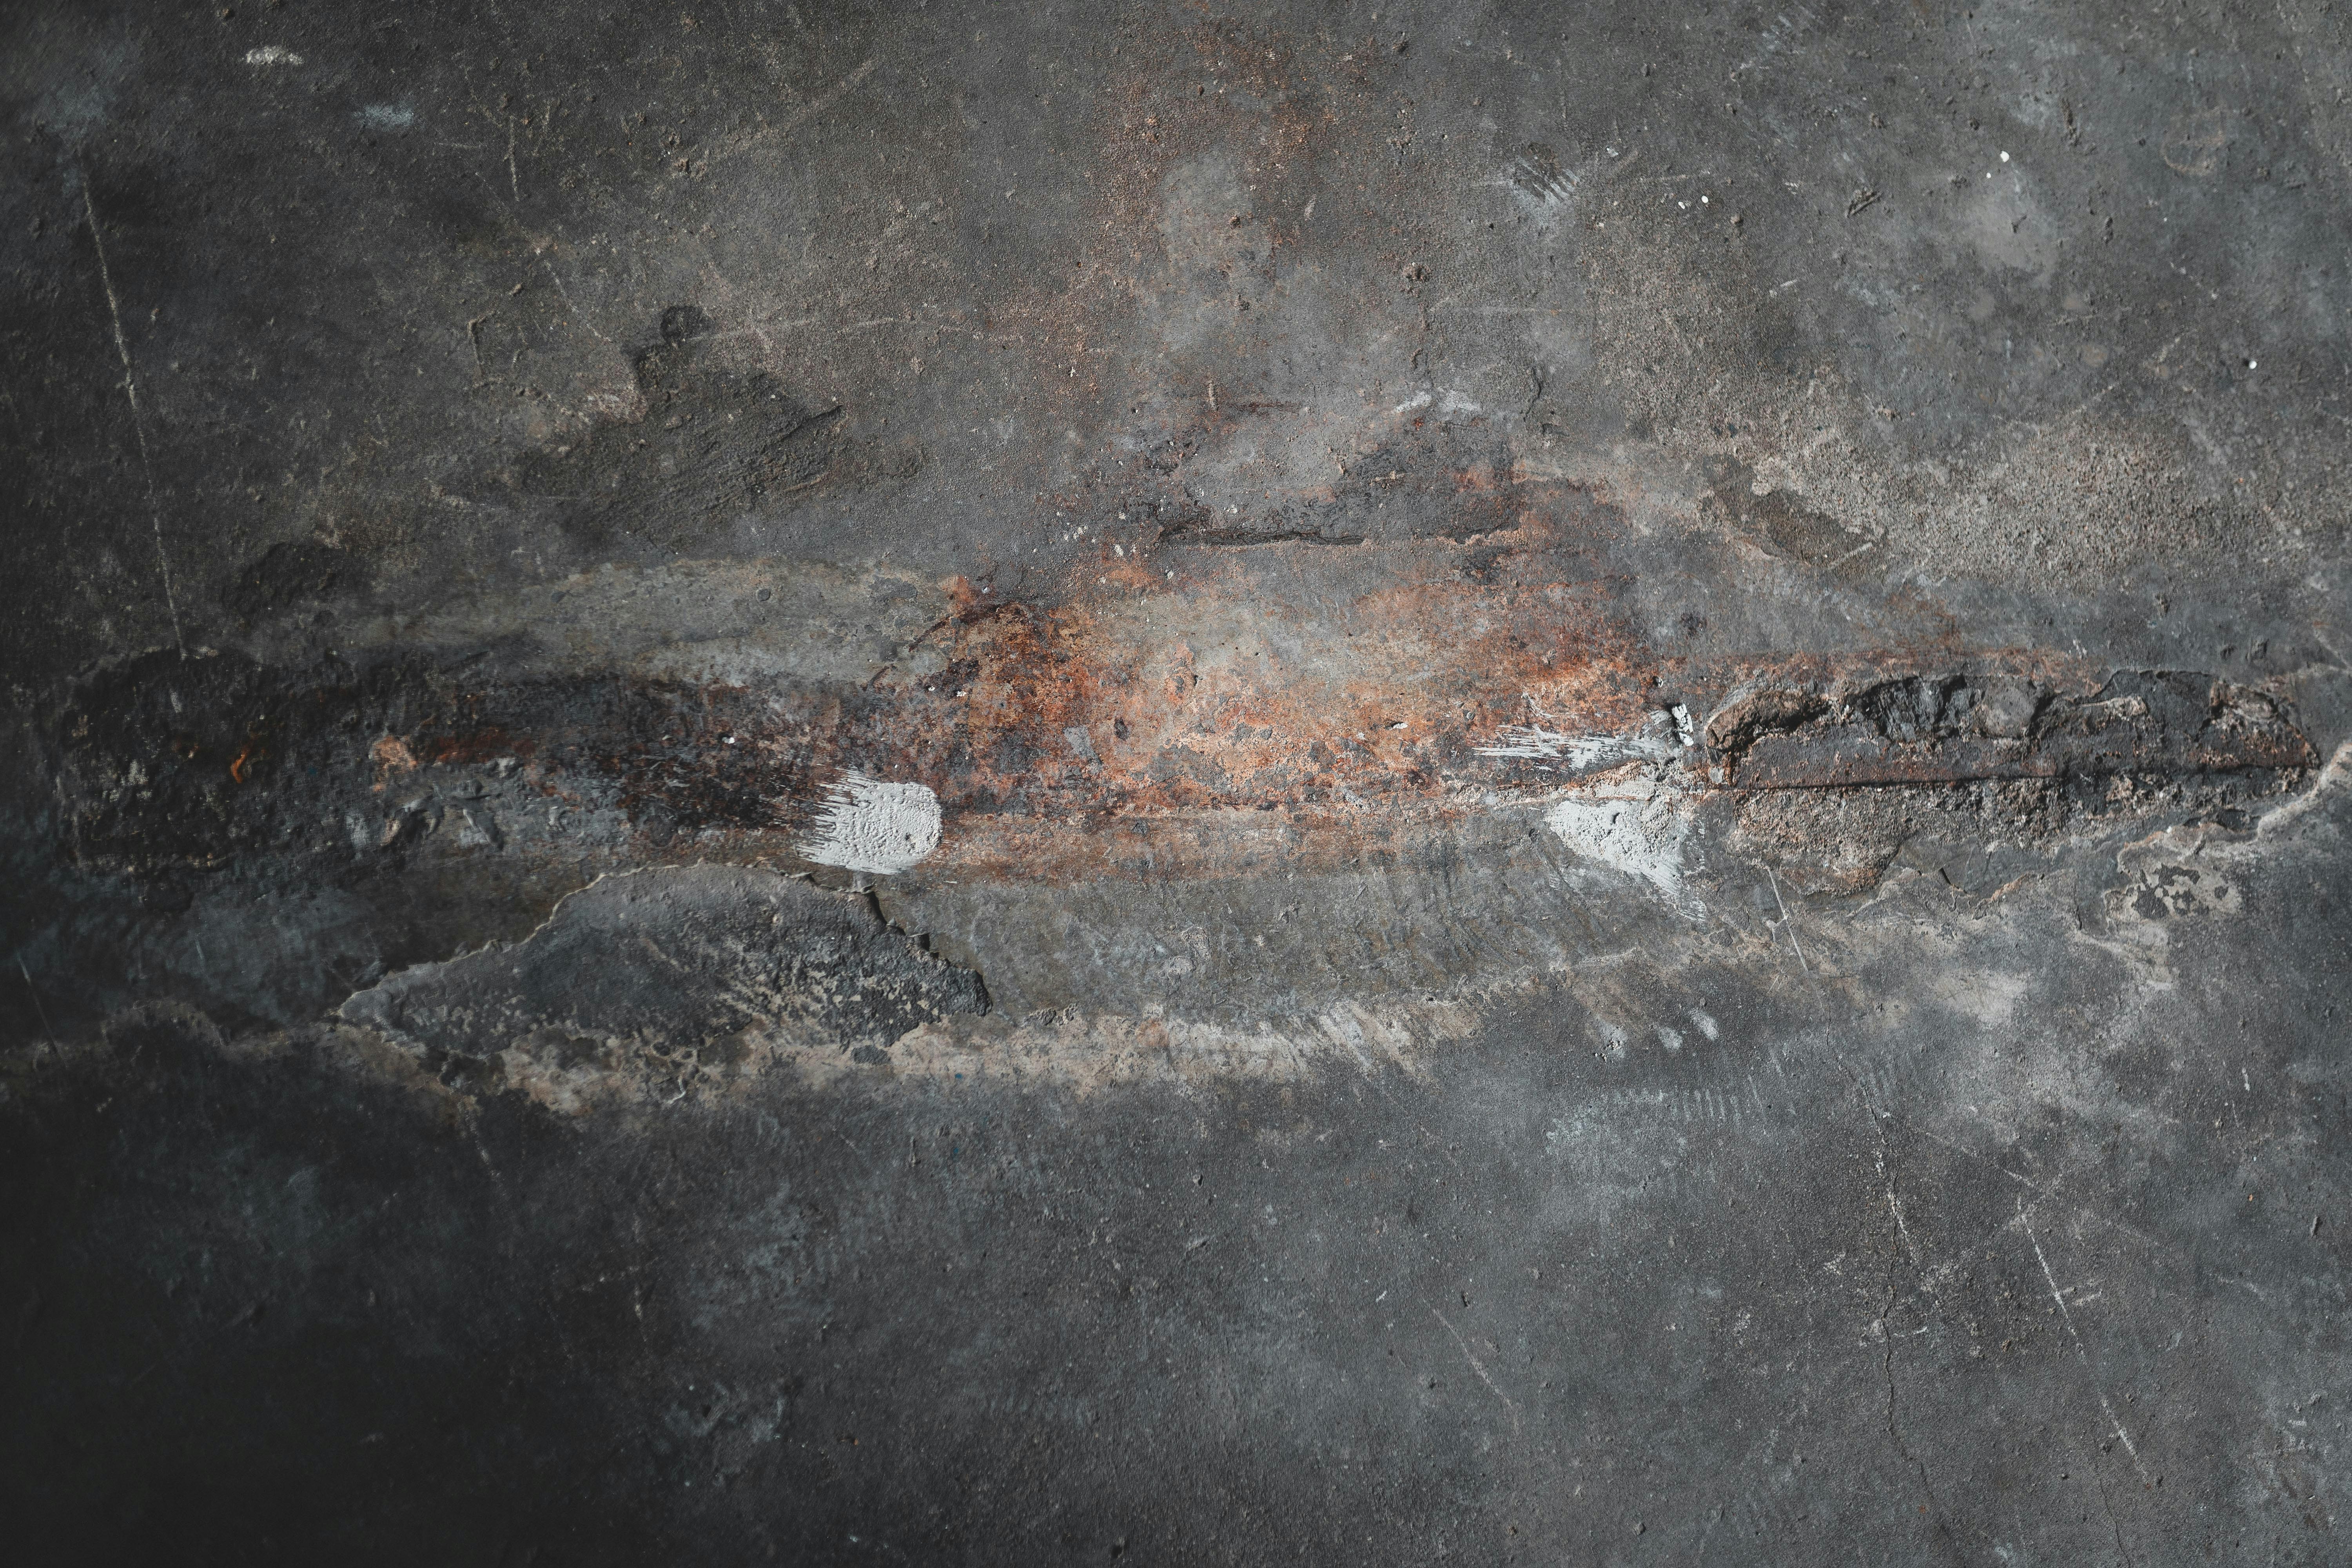 brown metal rod on black concrete floor